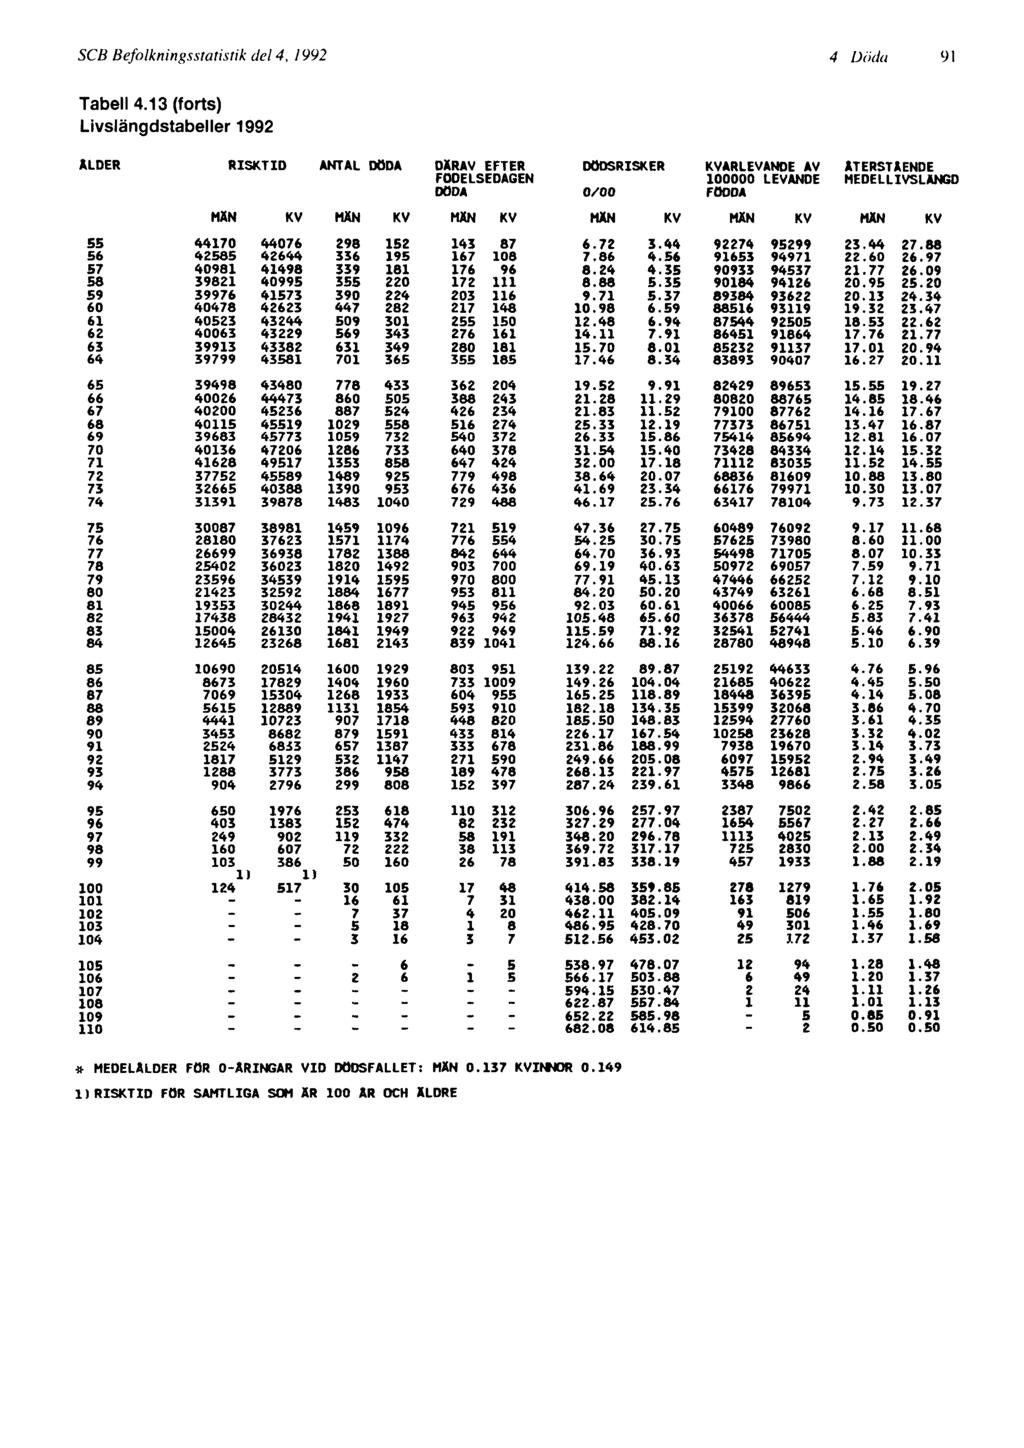 SCB Befolkningsstatistik del 4, 1992 4 Döda 91 MEDELÅLDER FOR O-ÄRINGAR VID